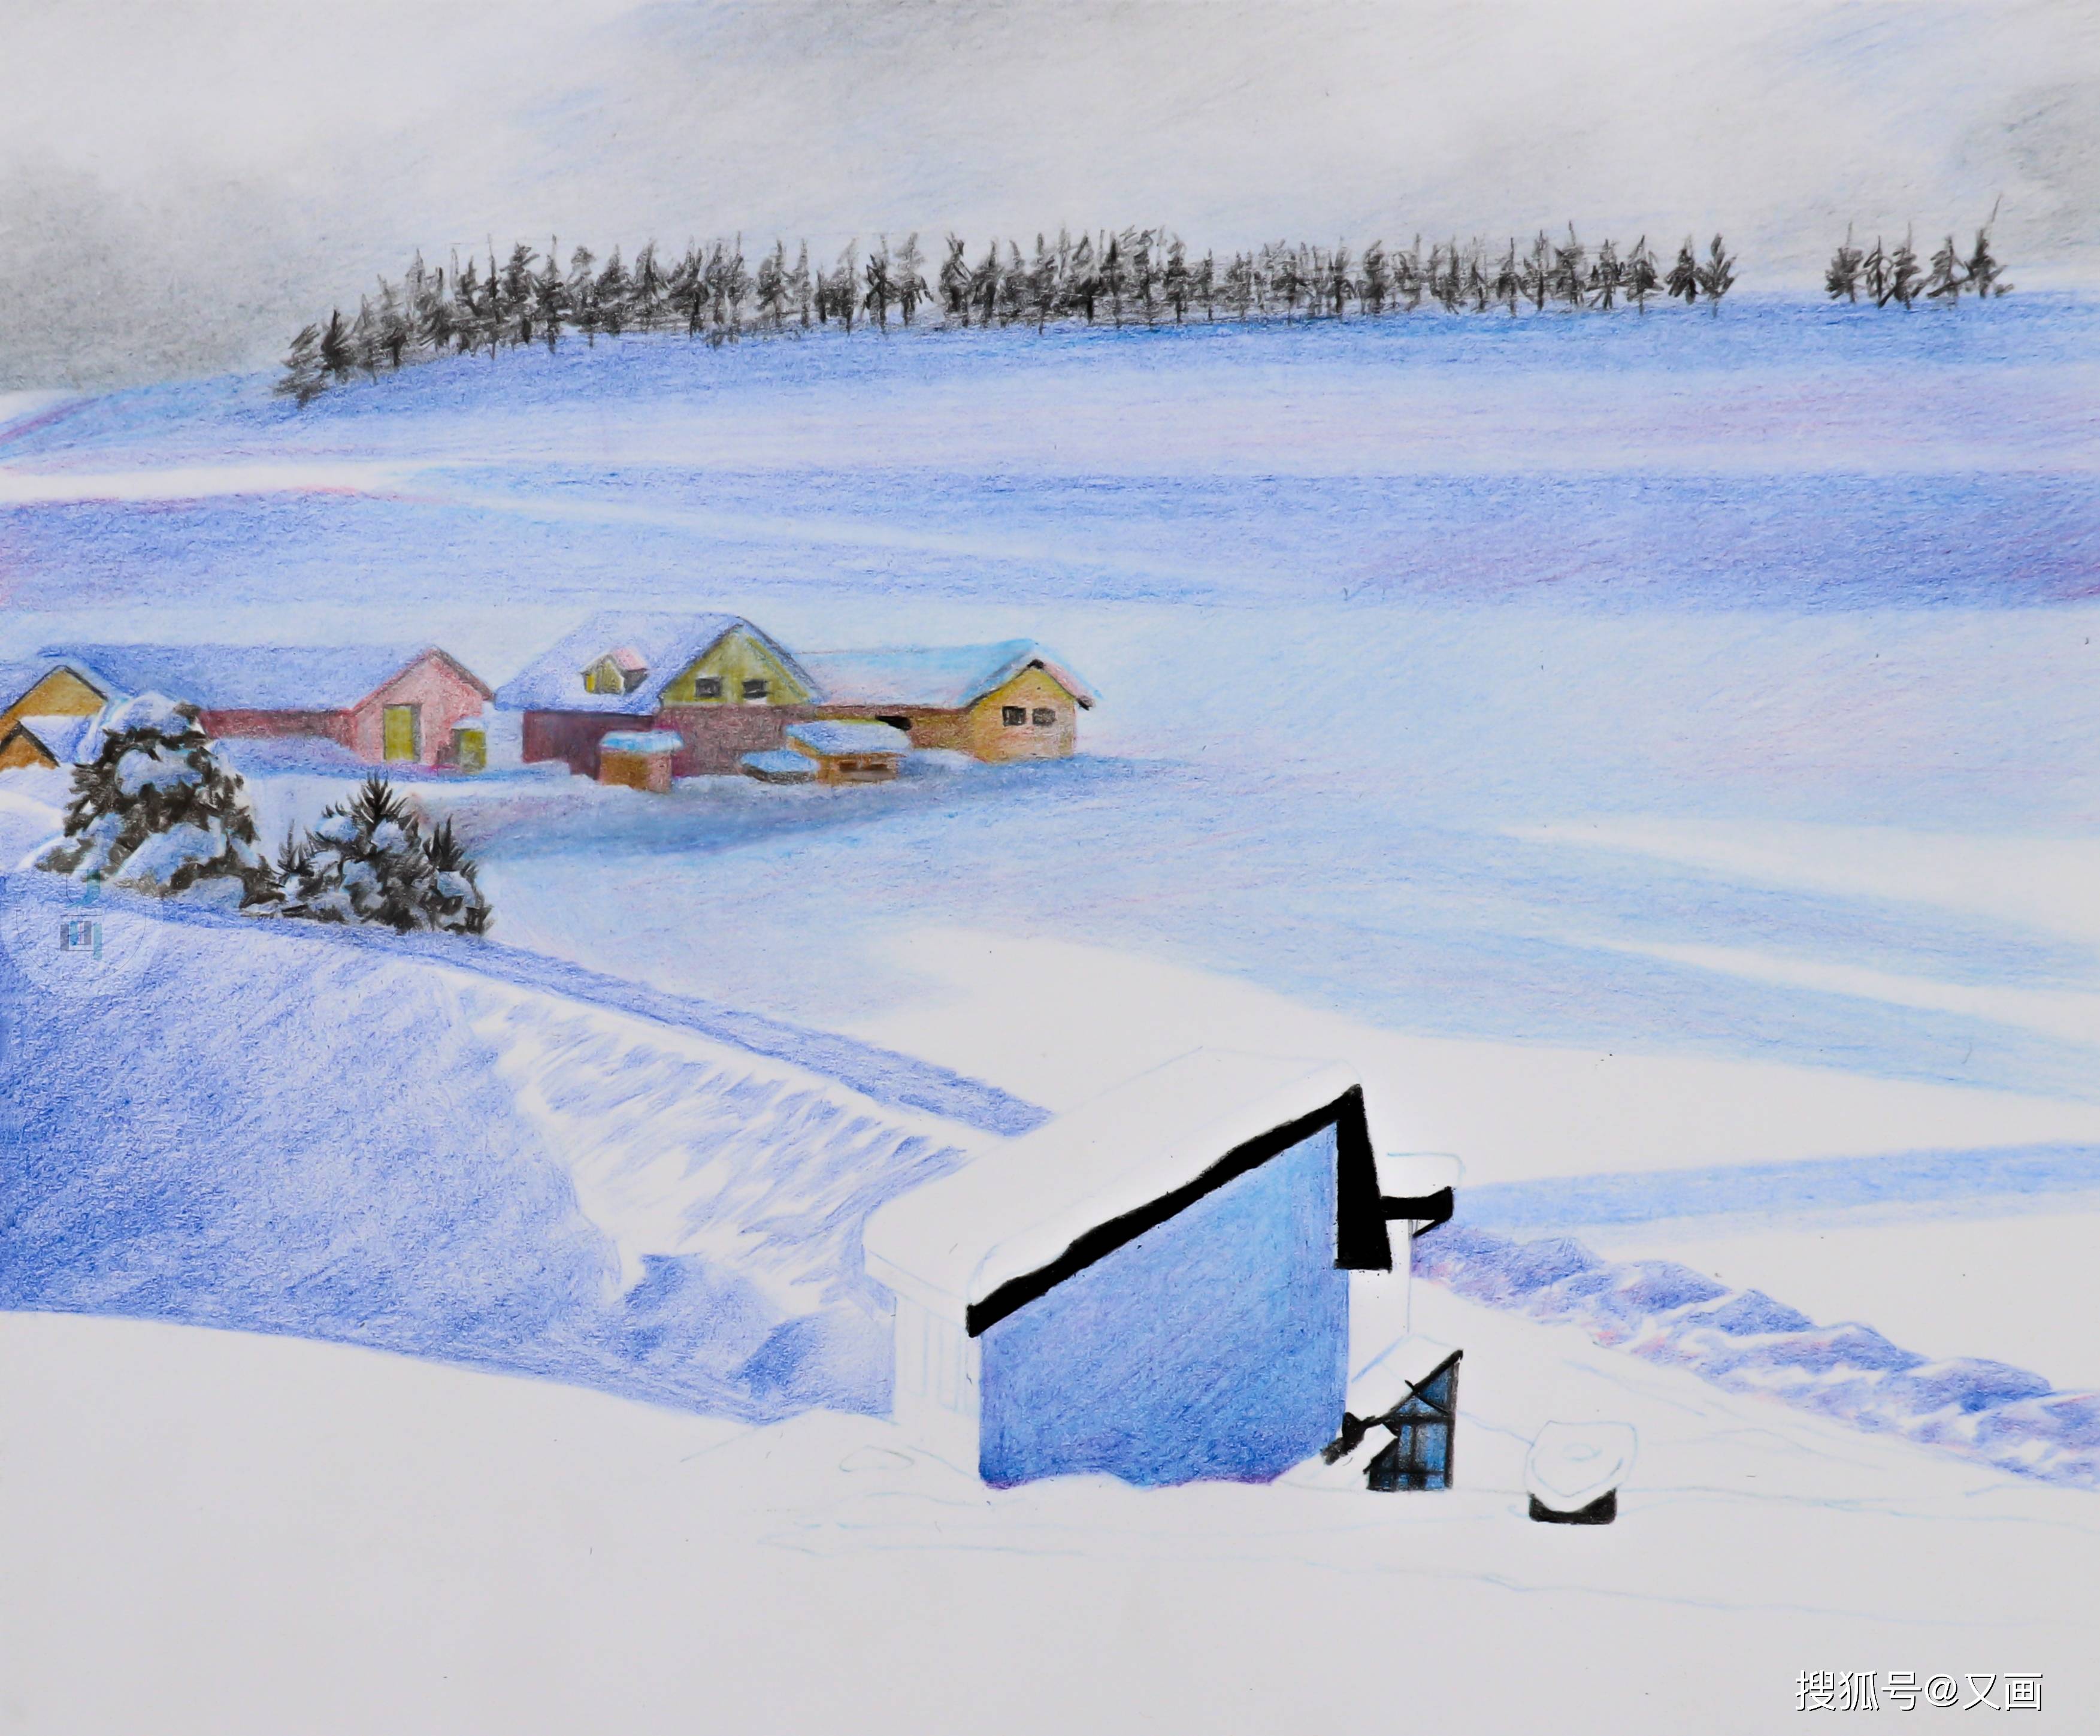 冬天来了,给大家分享一个彩铅雪景的小教程.